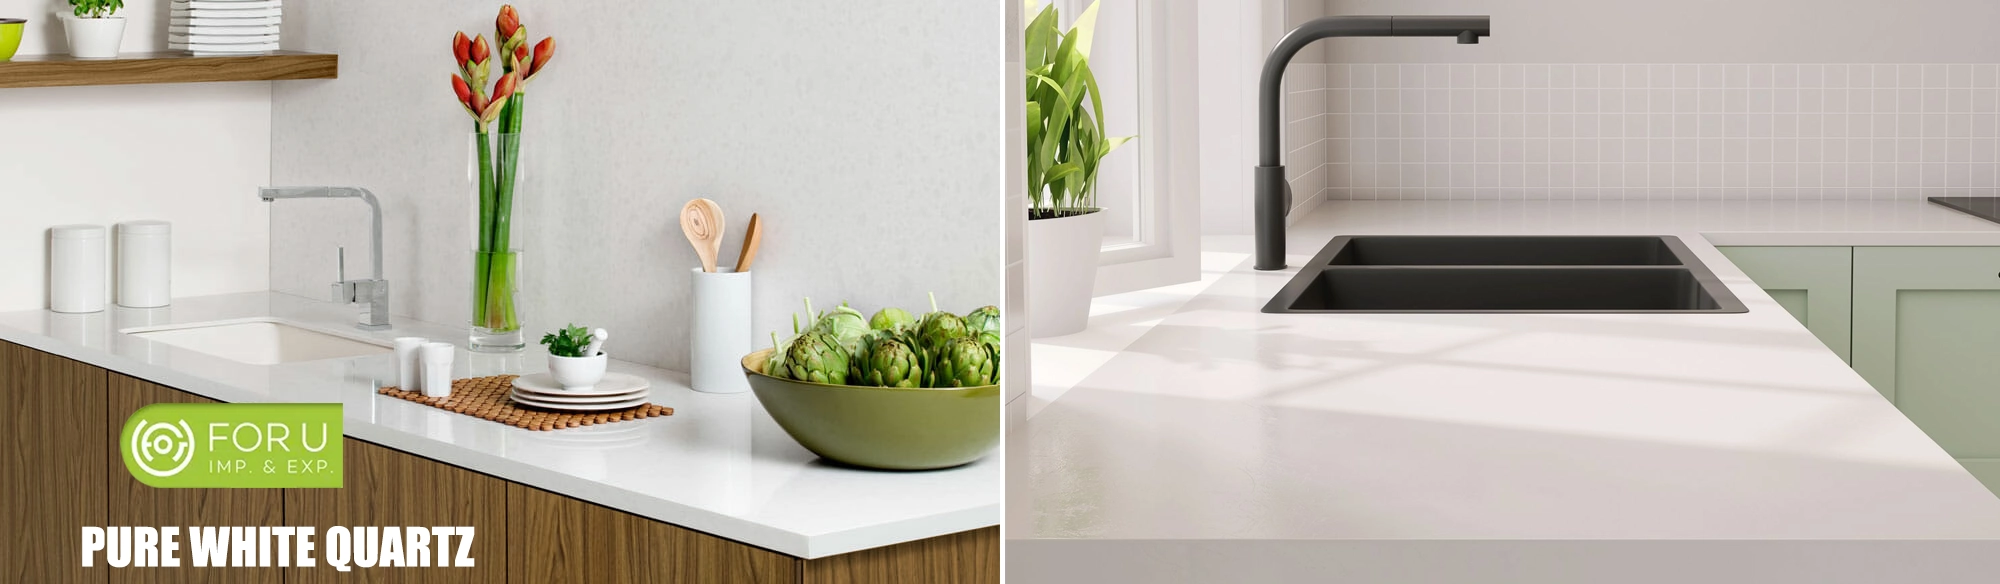 Pure White Quartz Kitchen Countertop projects FOR U STONE